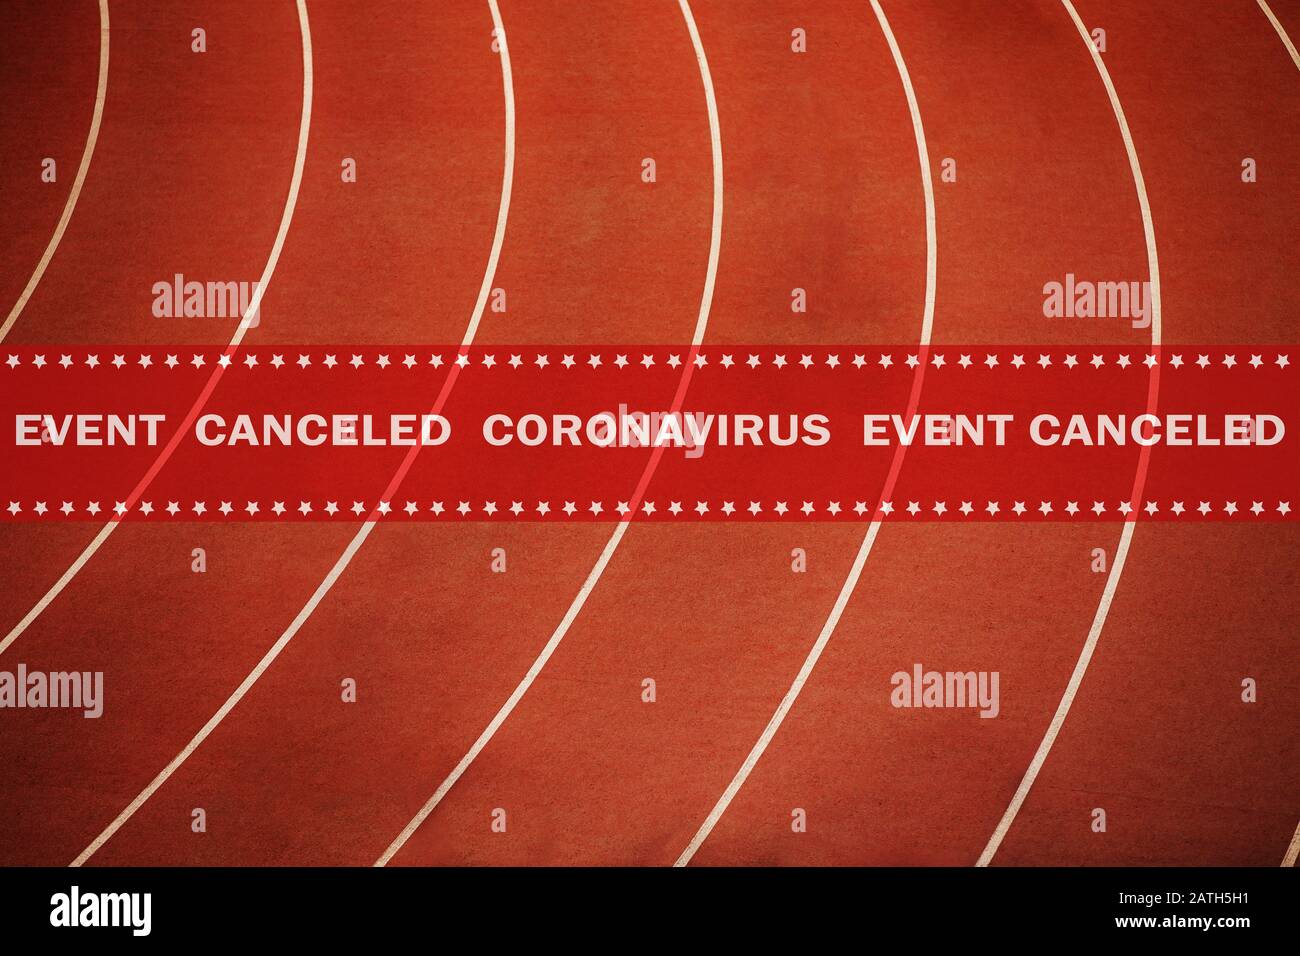 avviso evento nastro annullato coronavirus in background atletica corsa pista rossa Foto Stock